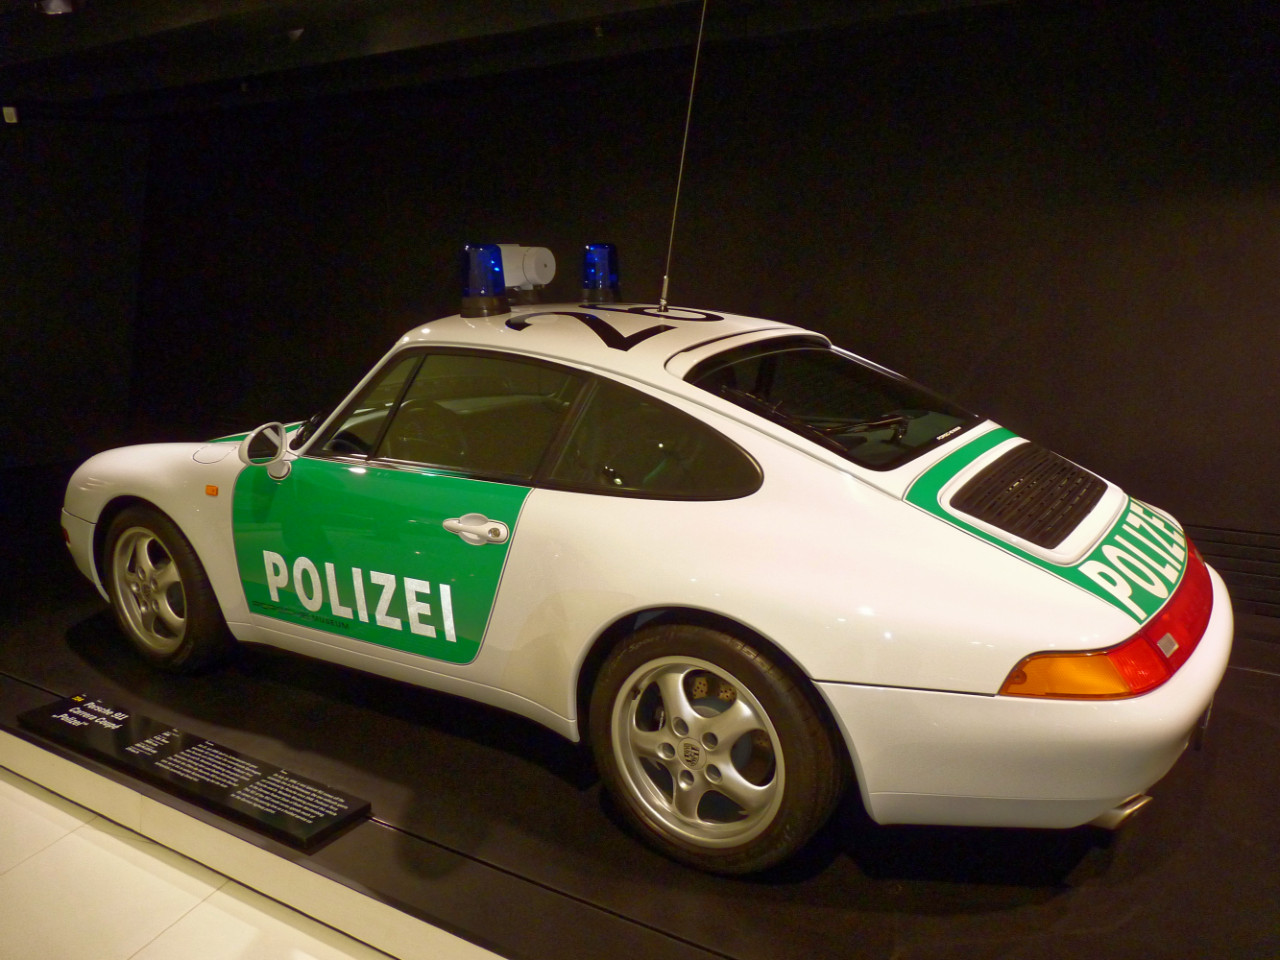 1996-Porsche_911-Polizei